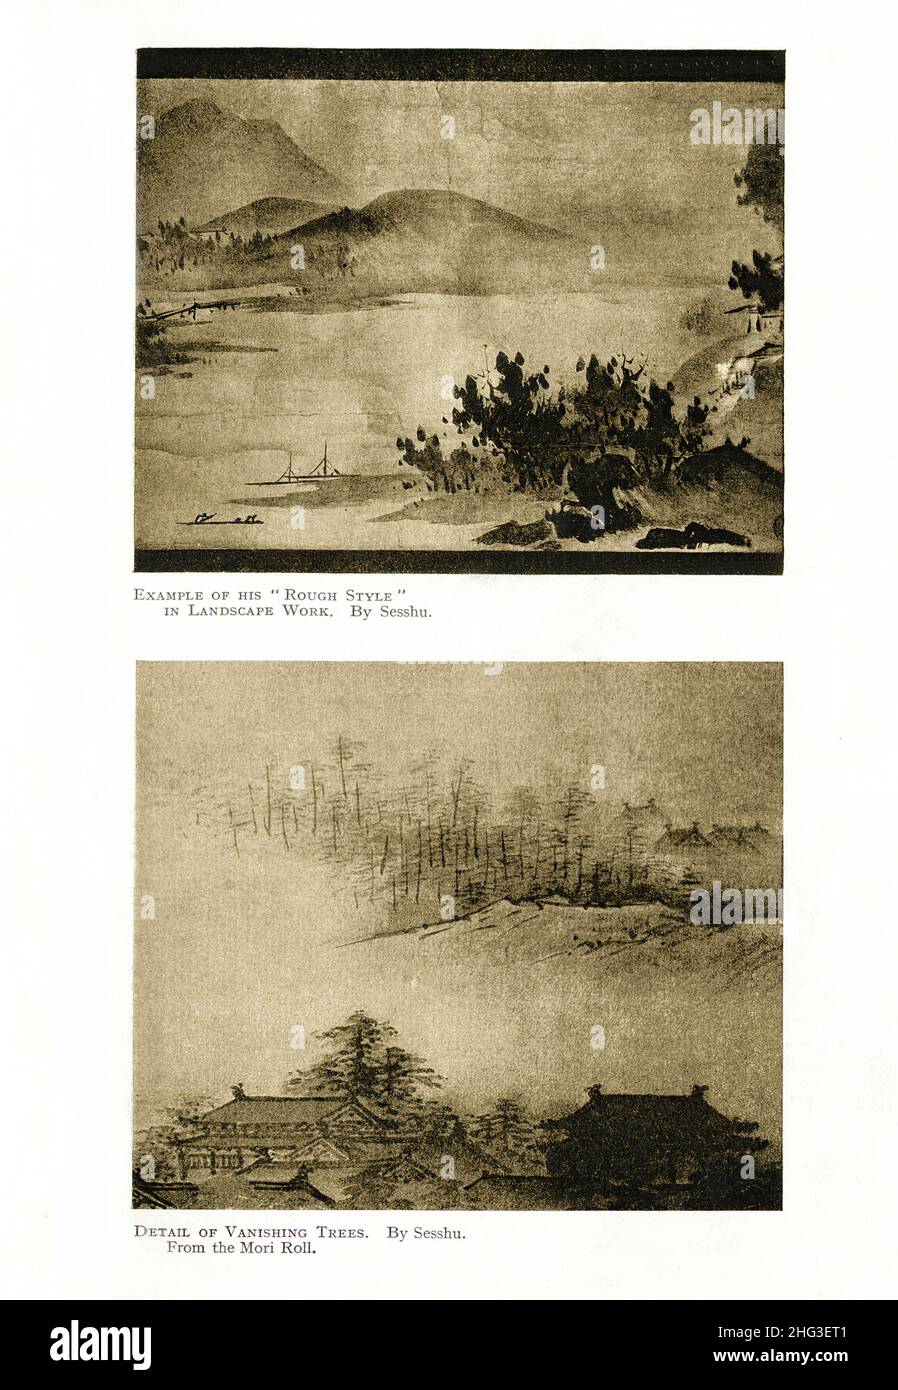 Japanische mittelalterliche Gemälde von Sesshu: Beispiel seines 'Rouch-Stils' in Landschaftsarbeiten (oben) und Details von Vanishing Trees. (Von Mori Roll). Neuprodukt Stockfoto